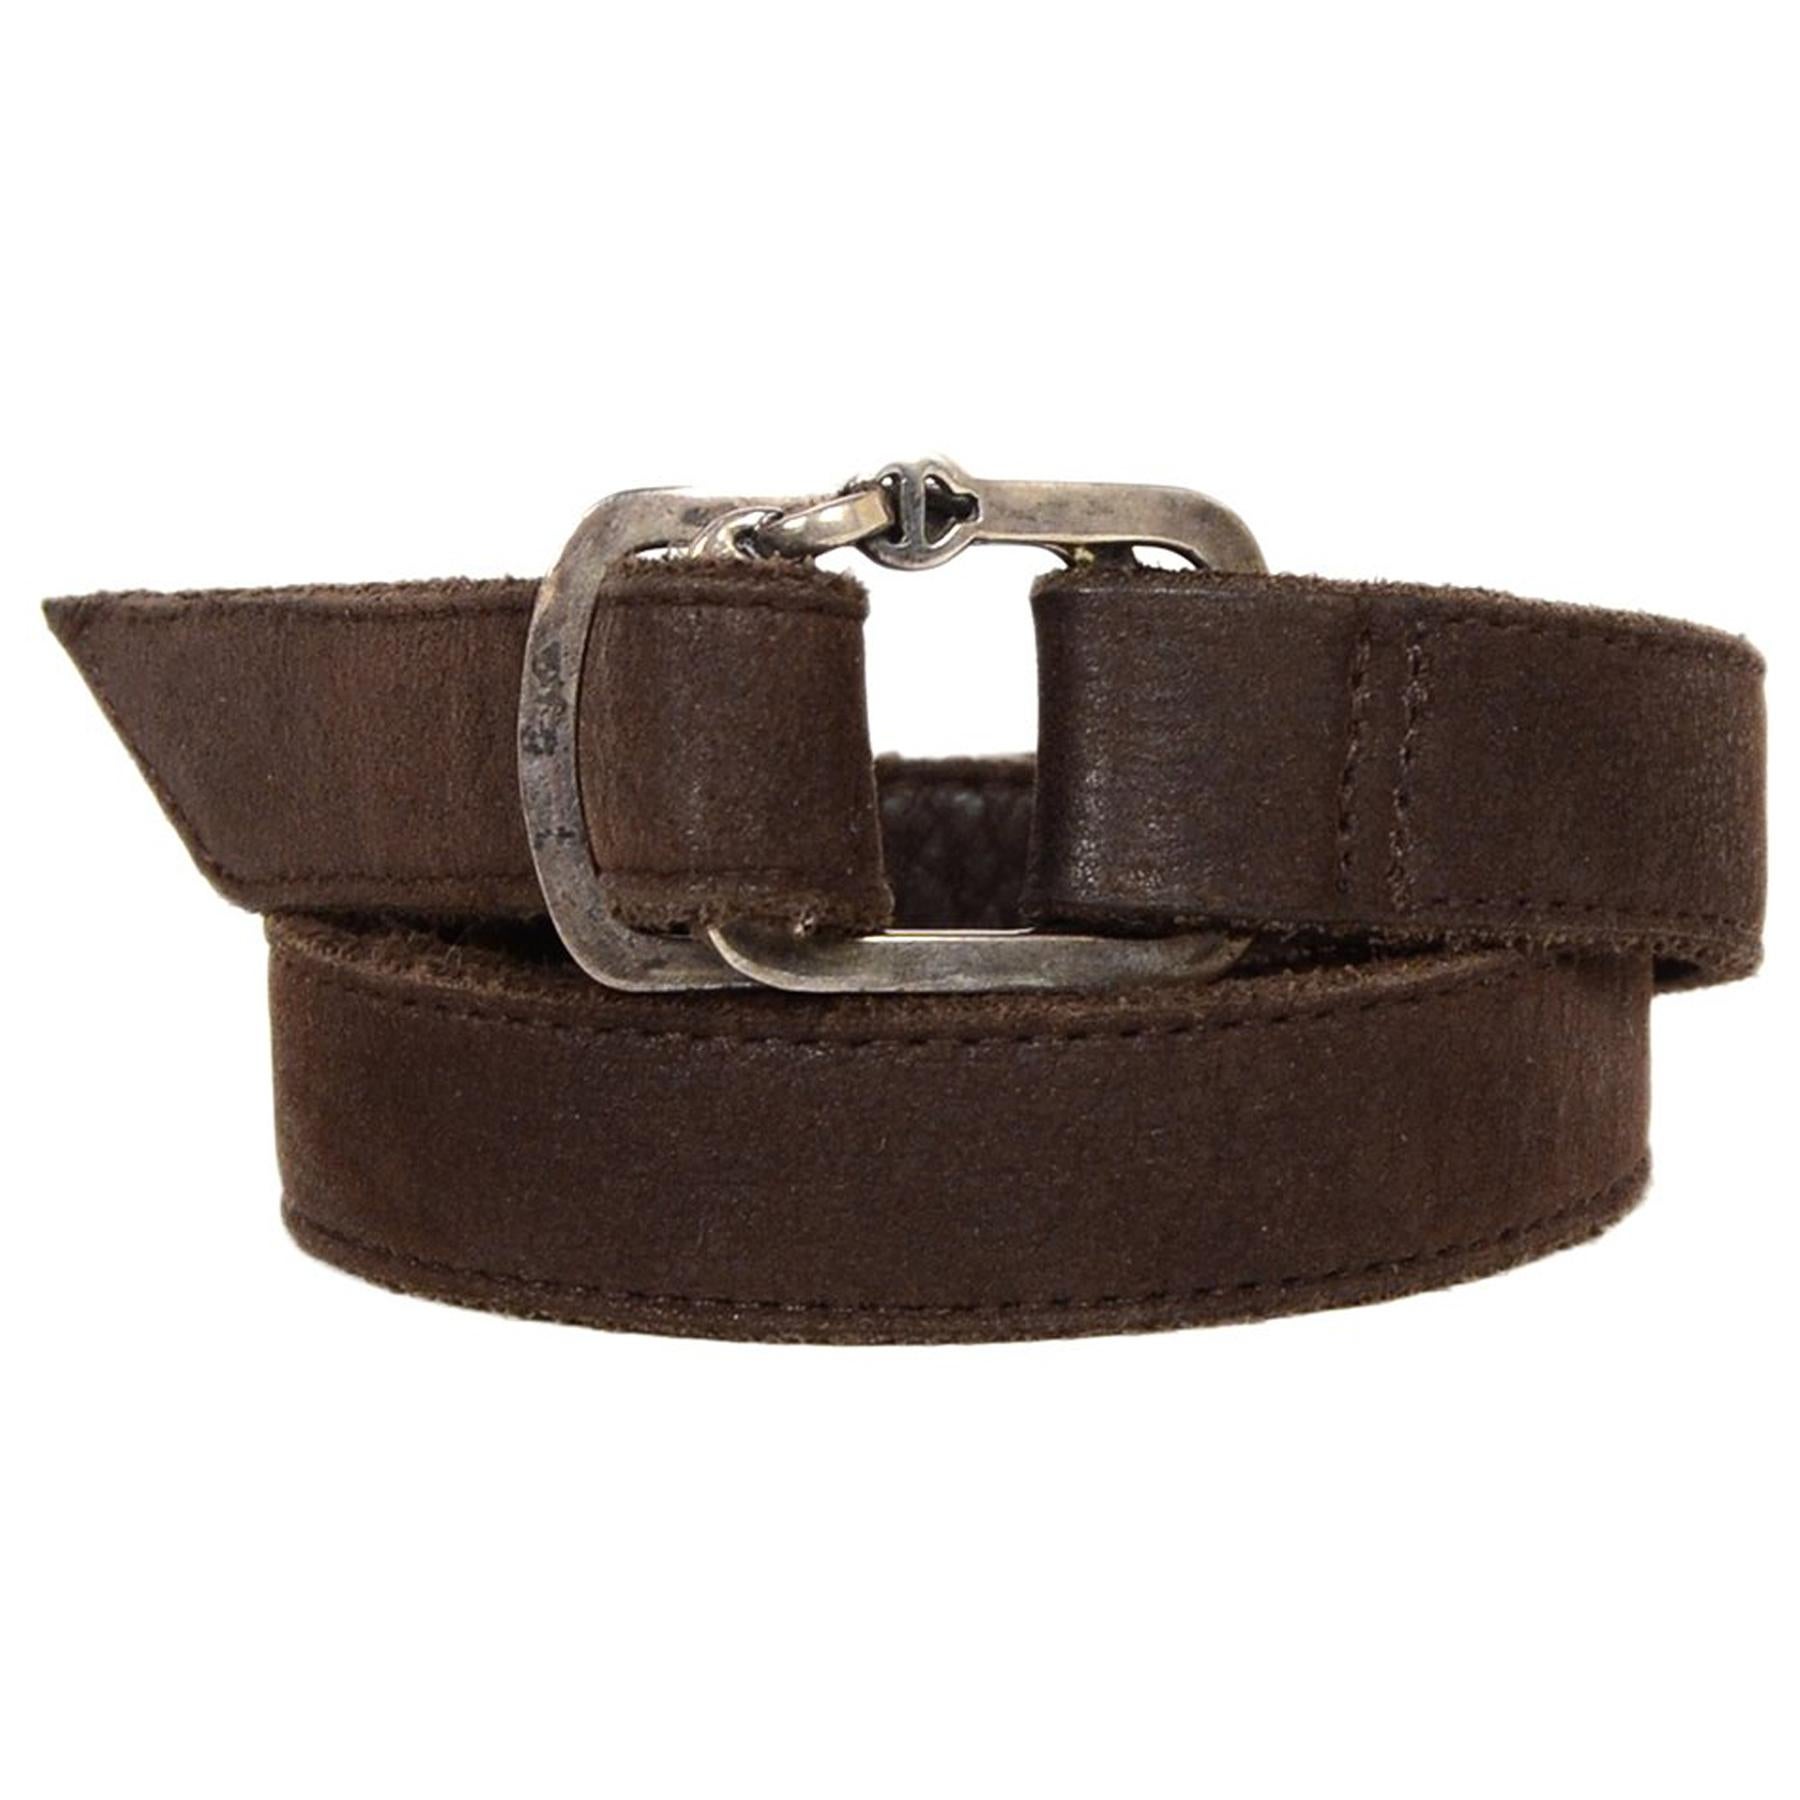 Hoorsenbuhs Brown Leather/Sterling Buckle Wrap Bracelet 